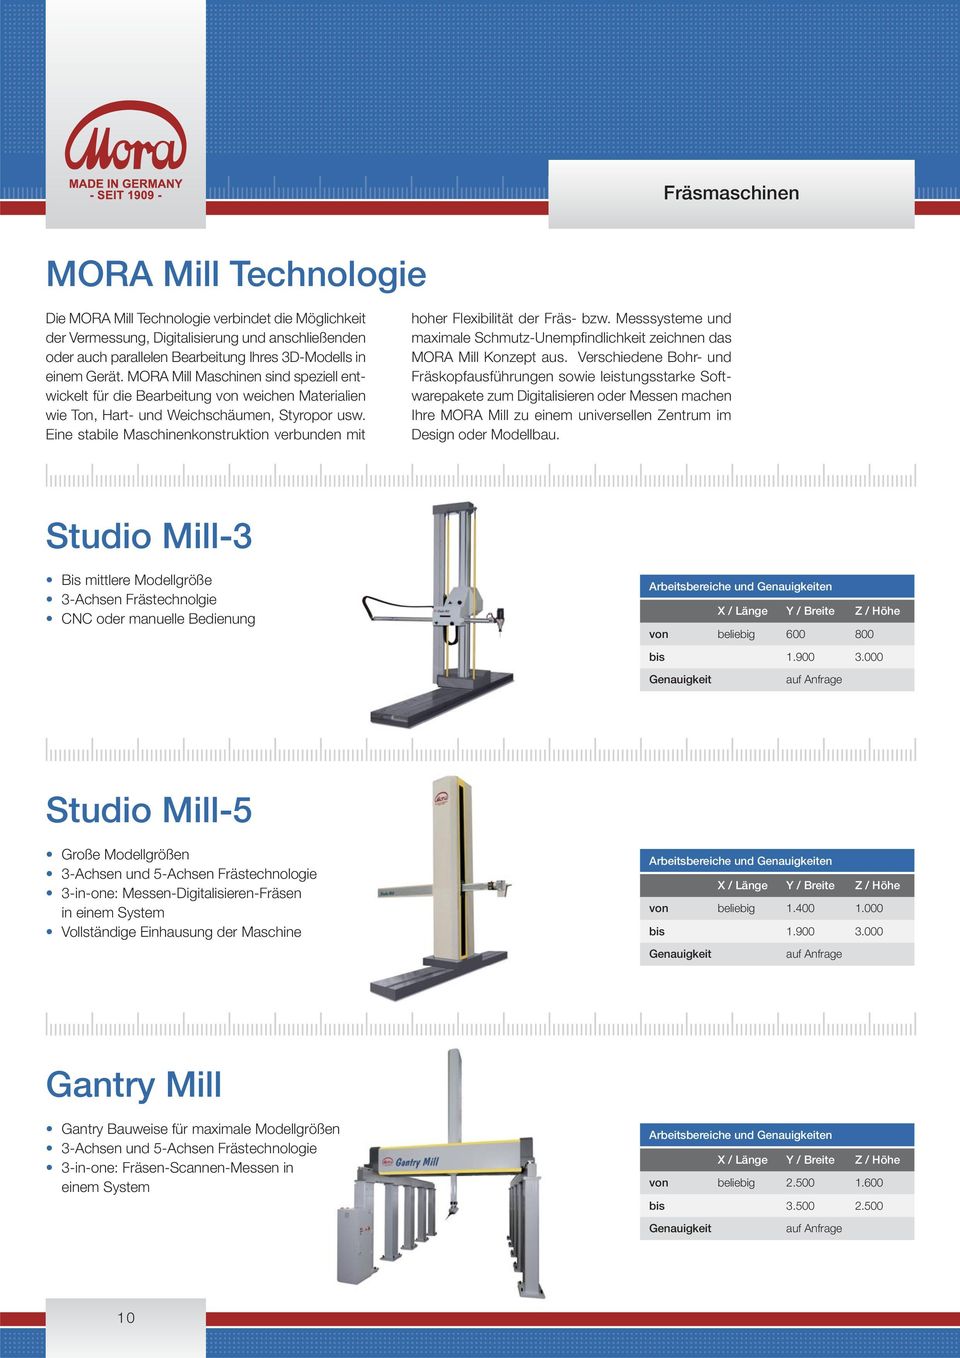 Eine stabile Maschinenkonstruktion verbunden mit hoher Flexibilität der Fräs- bzw. Messsysteme und maximale Schmutz-Unempfindlichkeit zeichnen das MORA Mill Konzept aus.